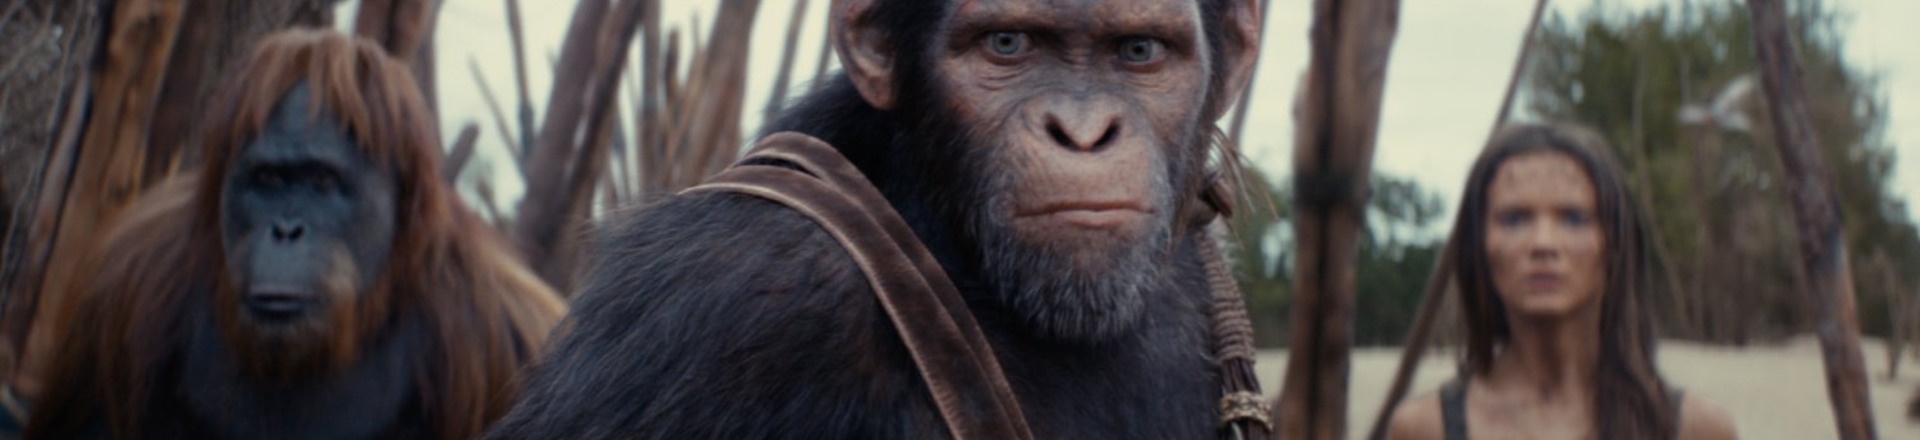 Planeta dos Macacos: O Reinado